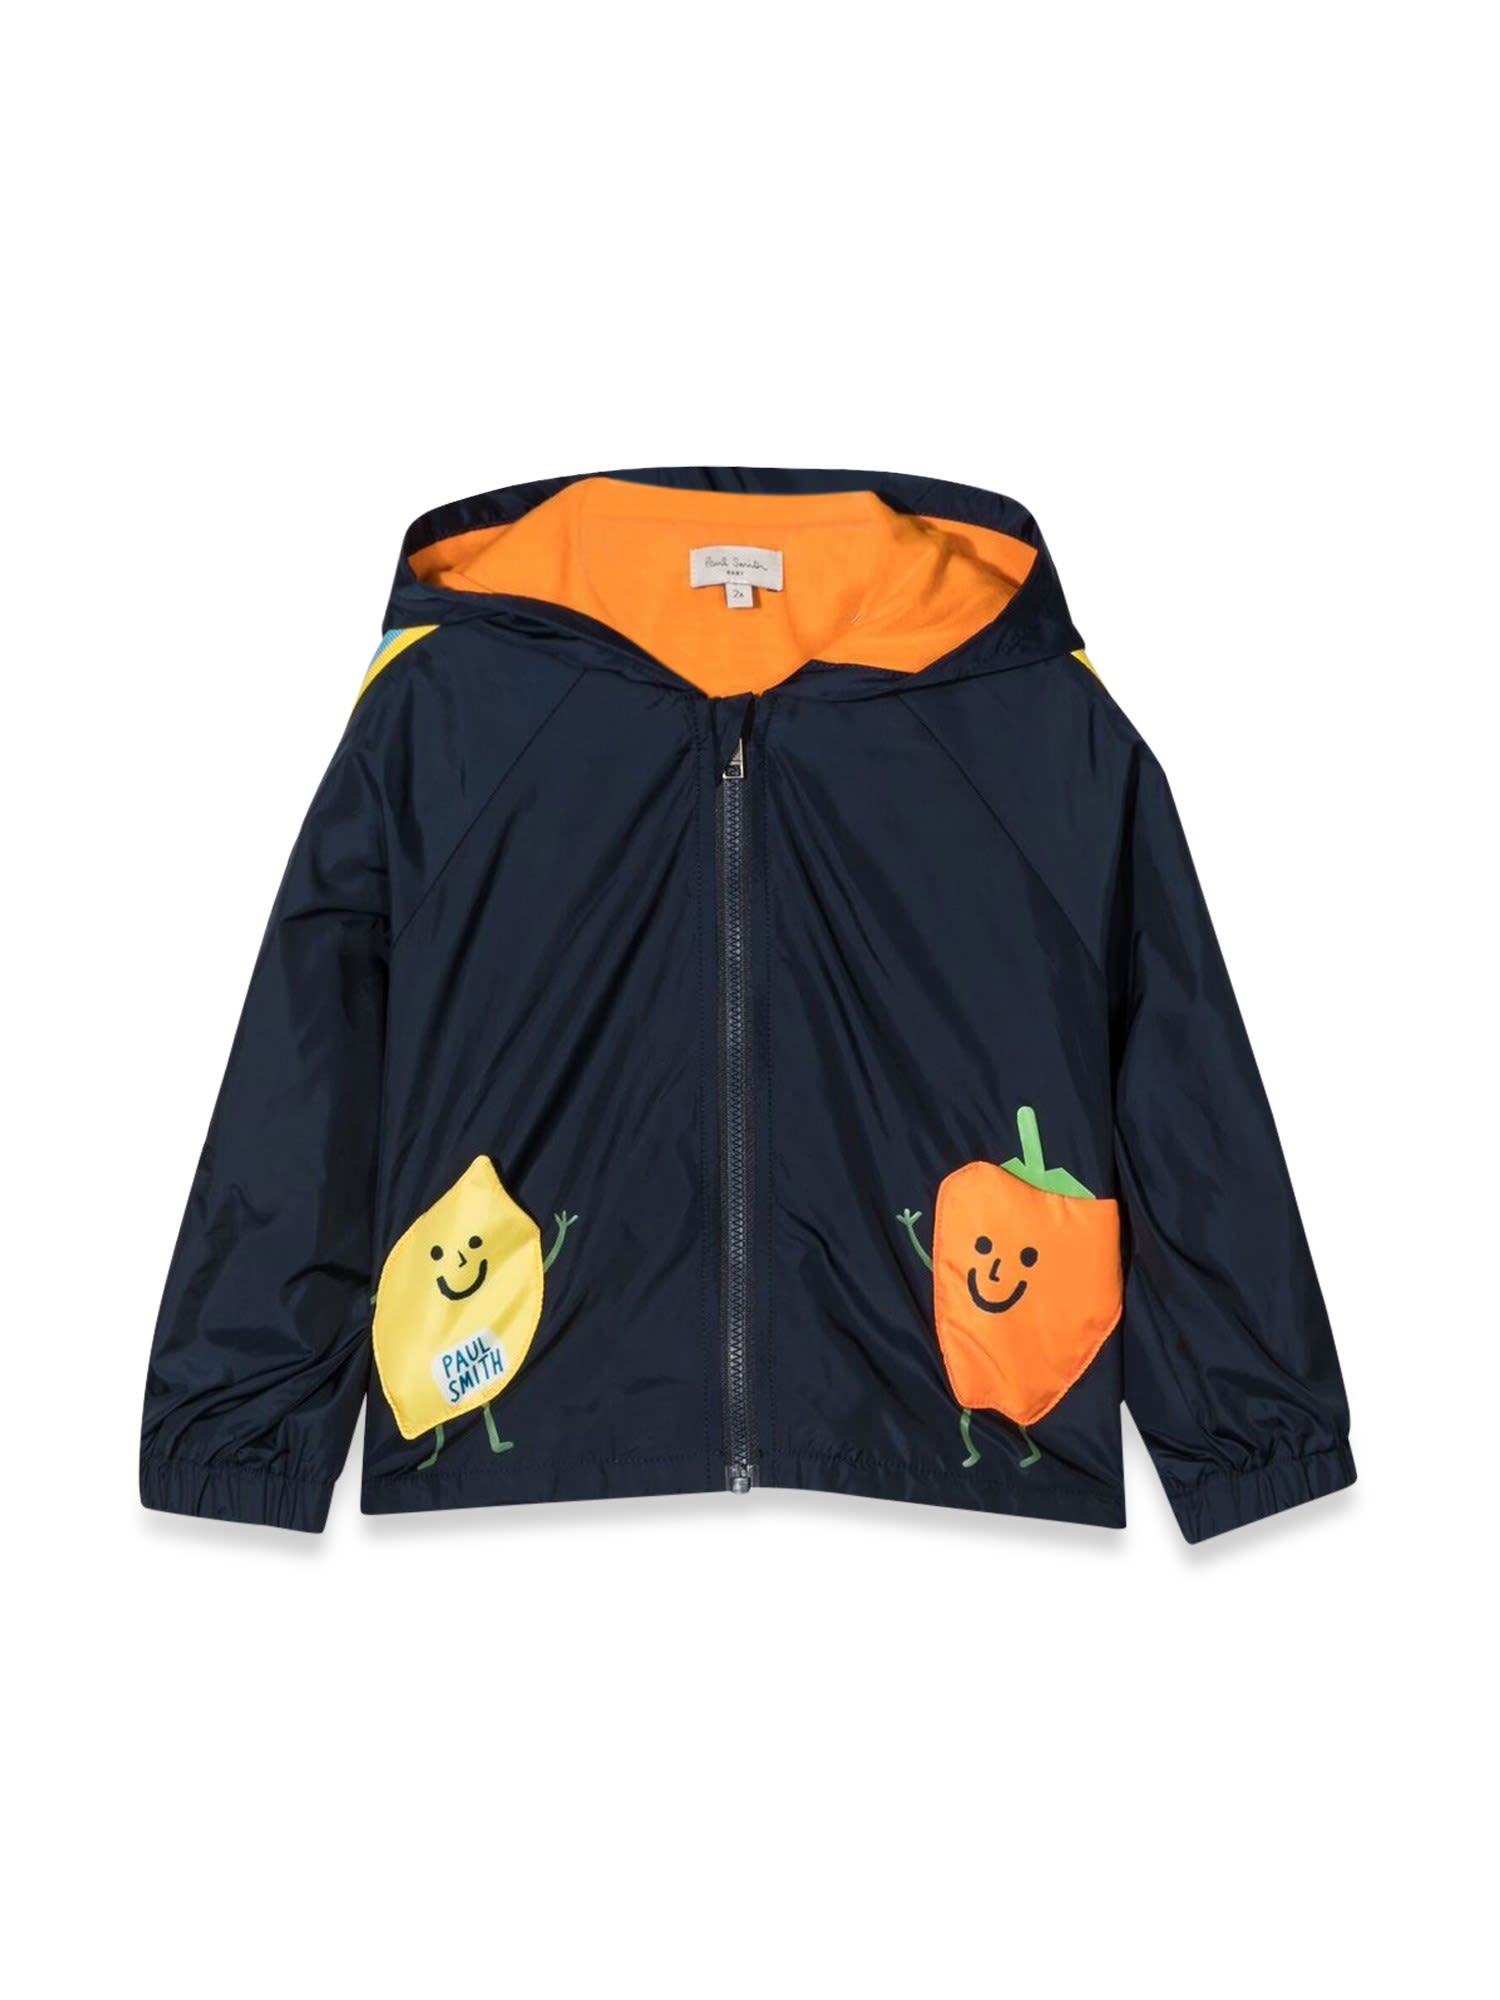 Paul Smith Kids' Hooded Jacket In Blu